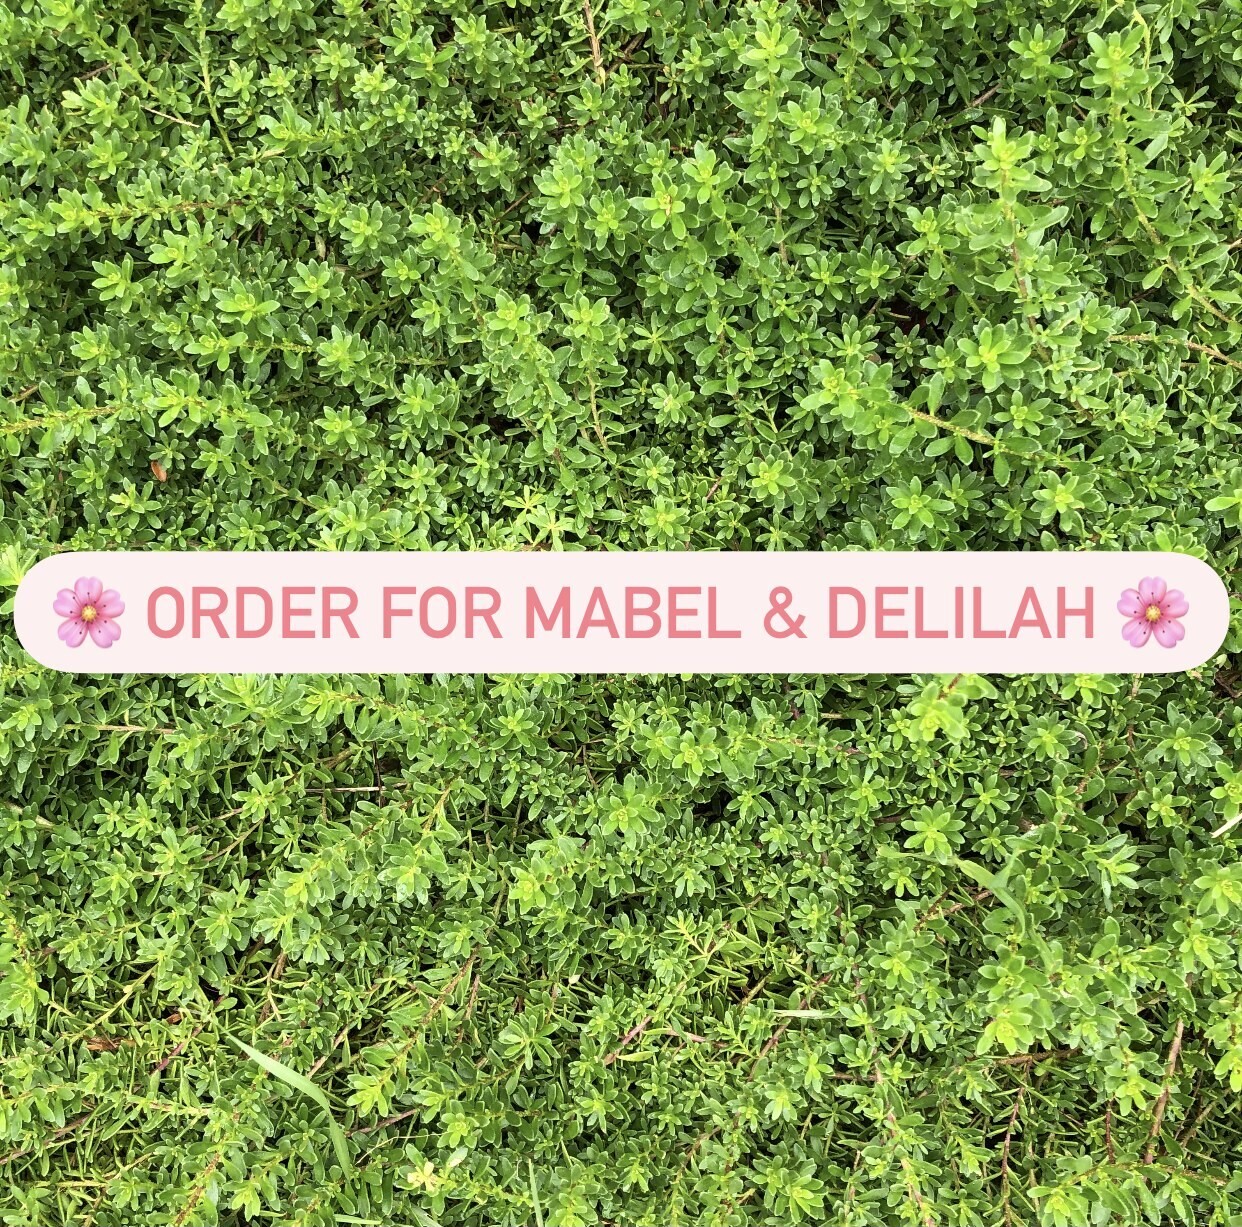 Order for Mabel & Delilah